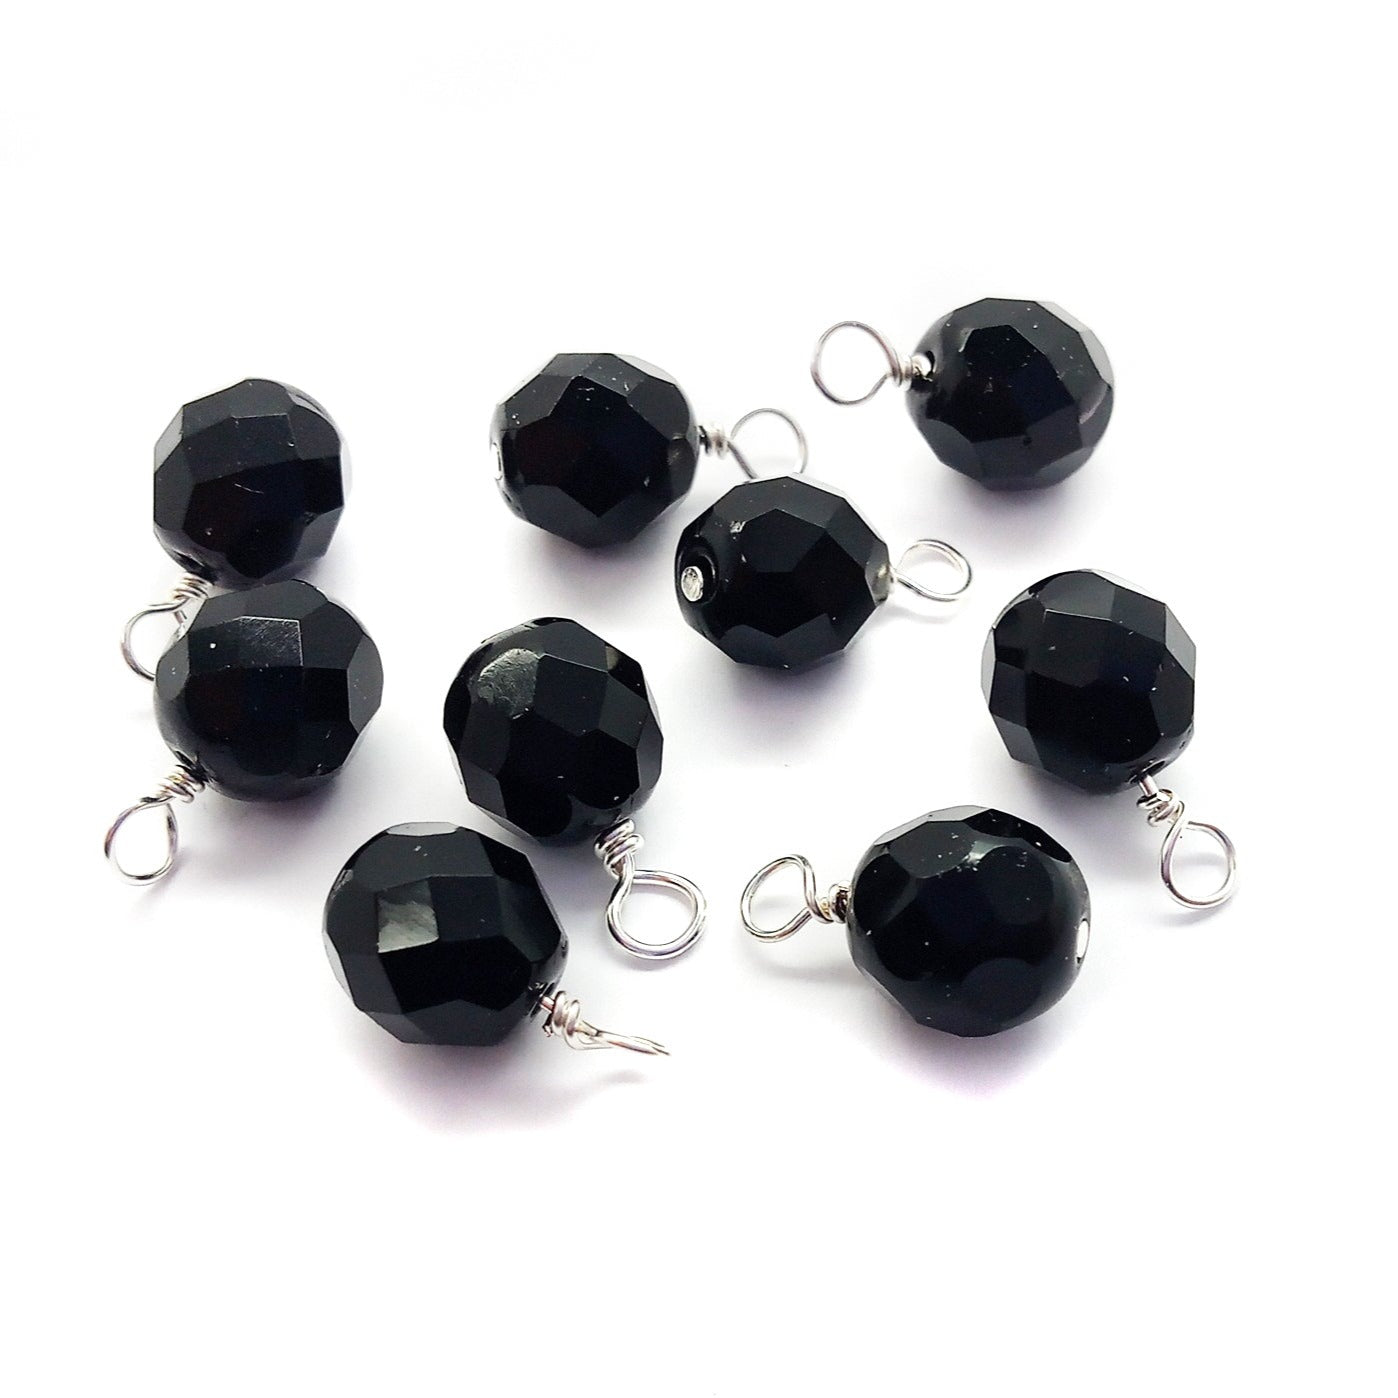 Black Fire-Polished Dangle Charms, 8mm Jet Czech Glass Beads